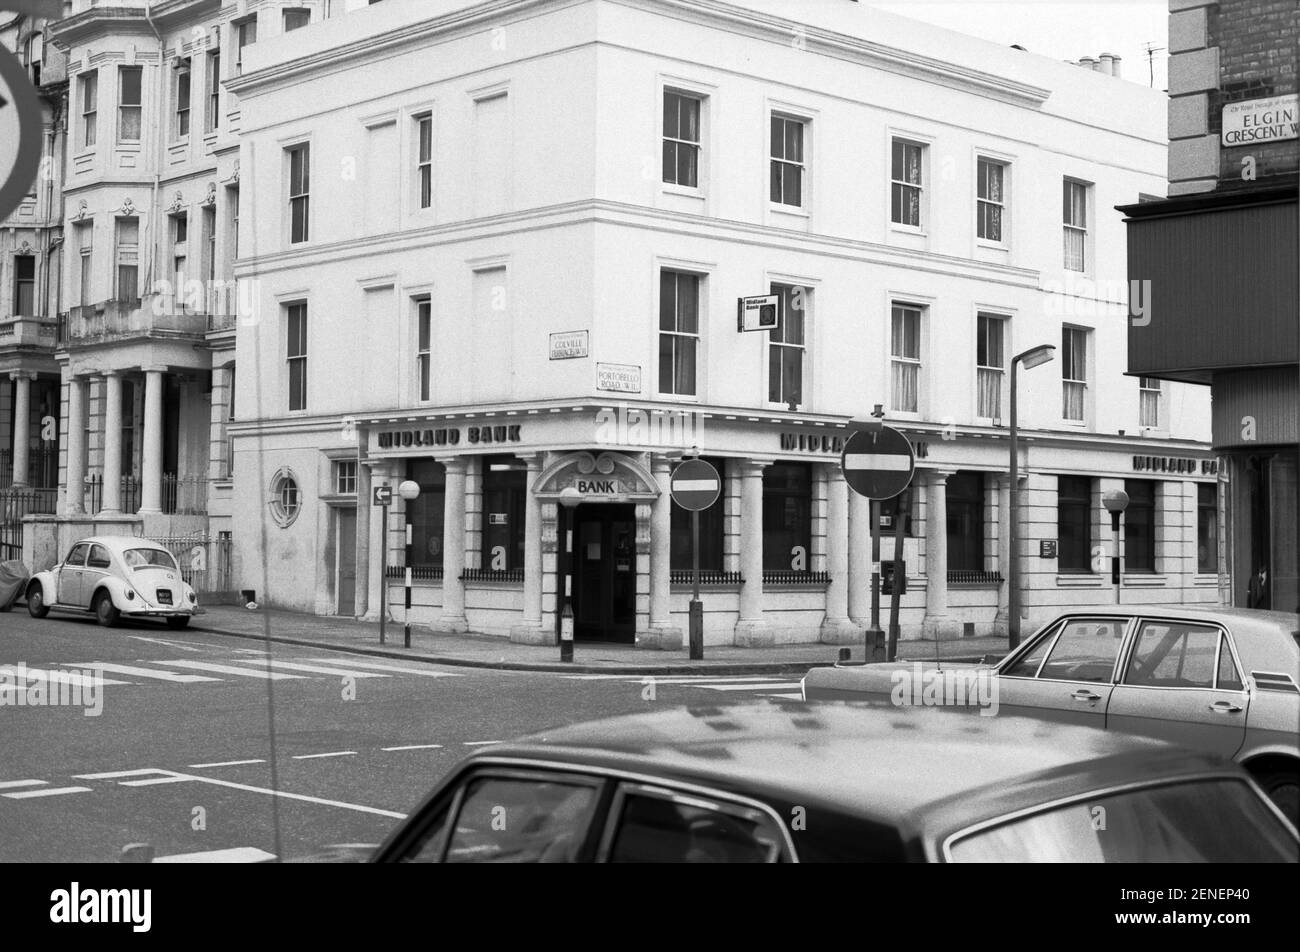 Regno Unito, Londra occidentale, Notting Hill, 1973. Elgin Crescent incontra Portobello Road. Colville Terrace di fronte. La Midland Bank è ora chiusa. Foto Stock